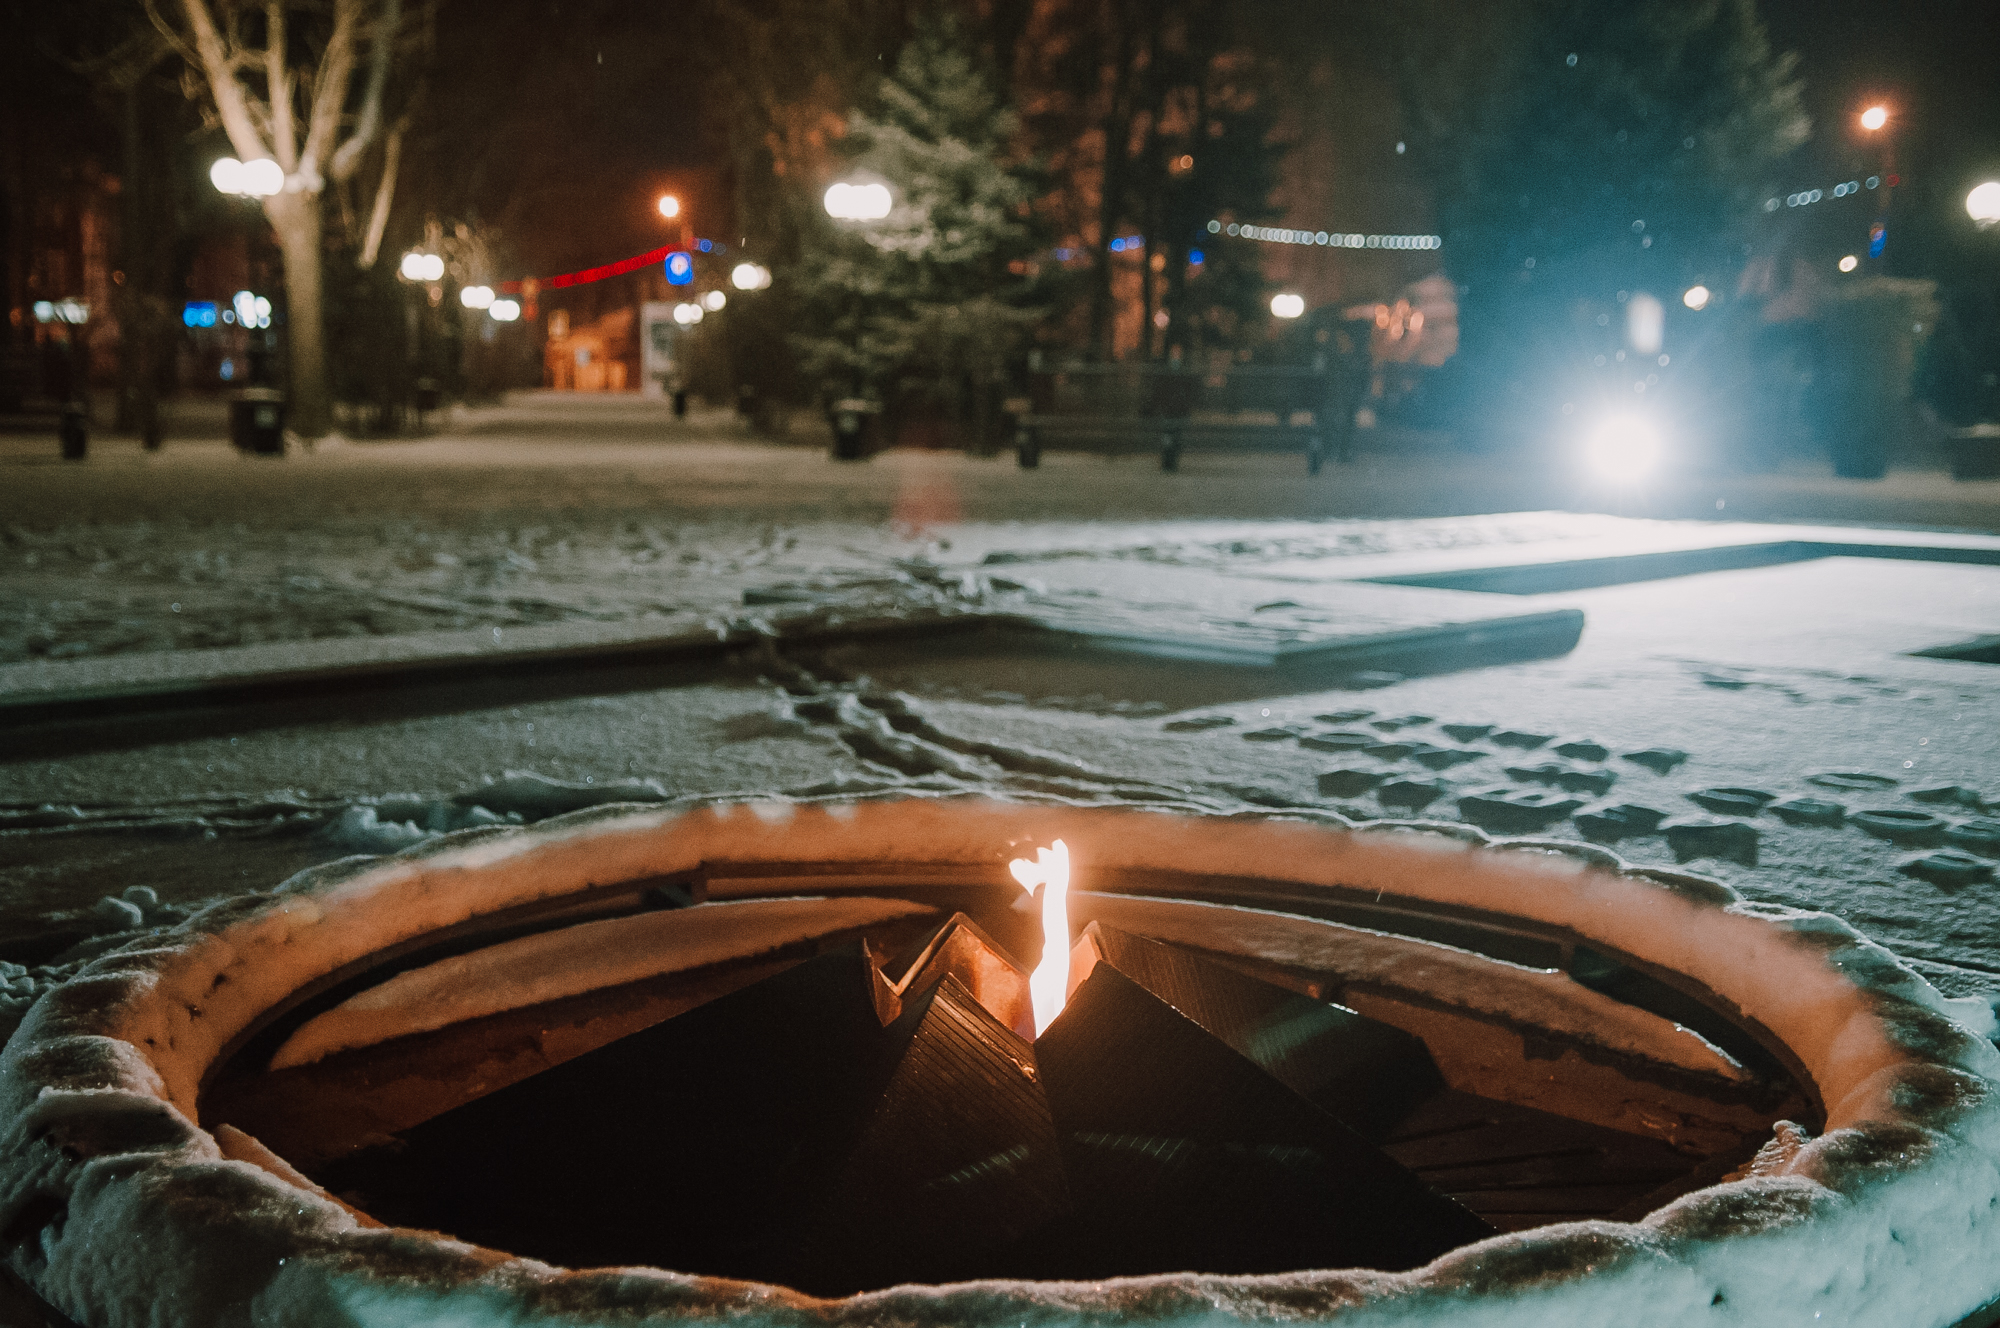 DSC 6825 В Астрахань пришла зима! 15 спецмашин вышли на борьбу со снегом. Фоторепортаж